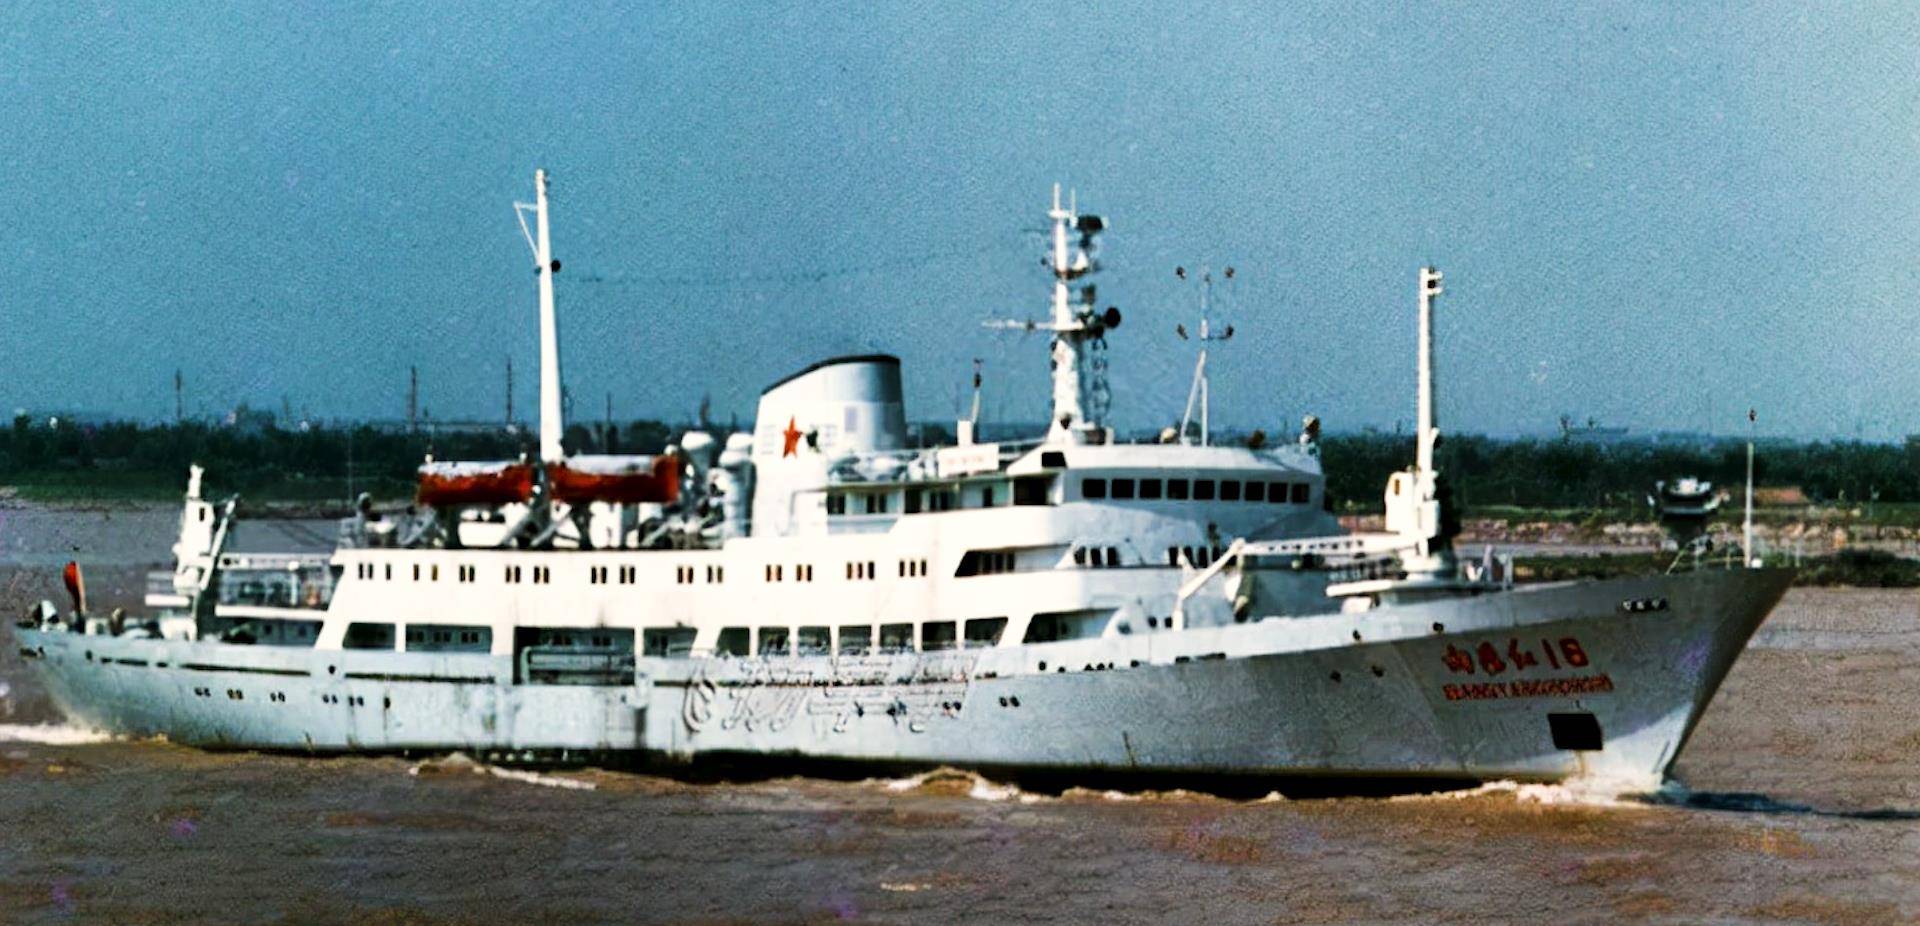 1993年中国科考船被撞沉,110名专家遇险,肇事方却称不是故意的